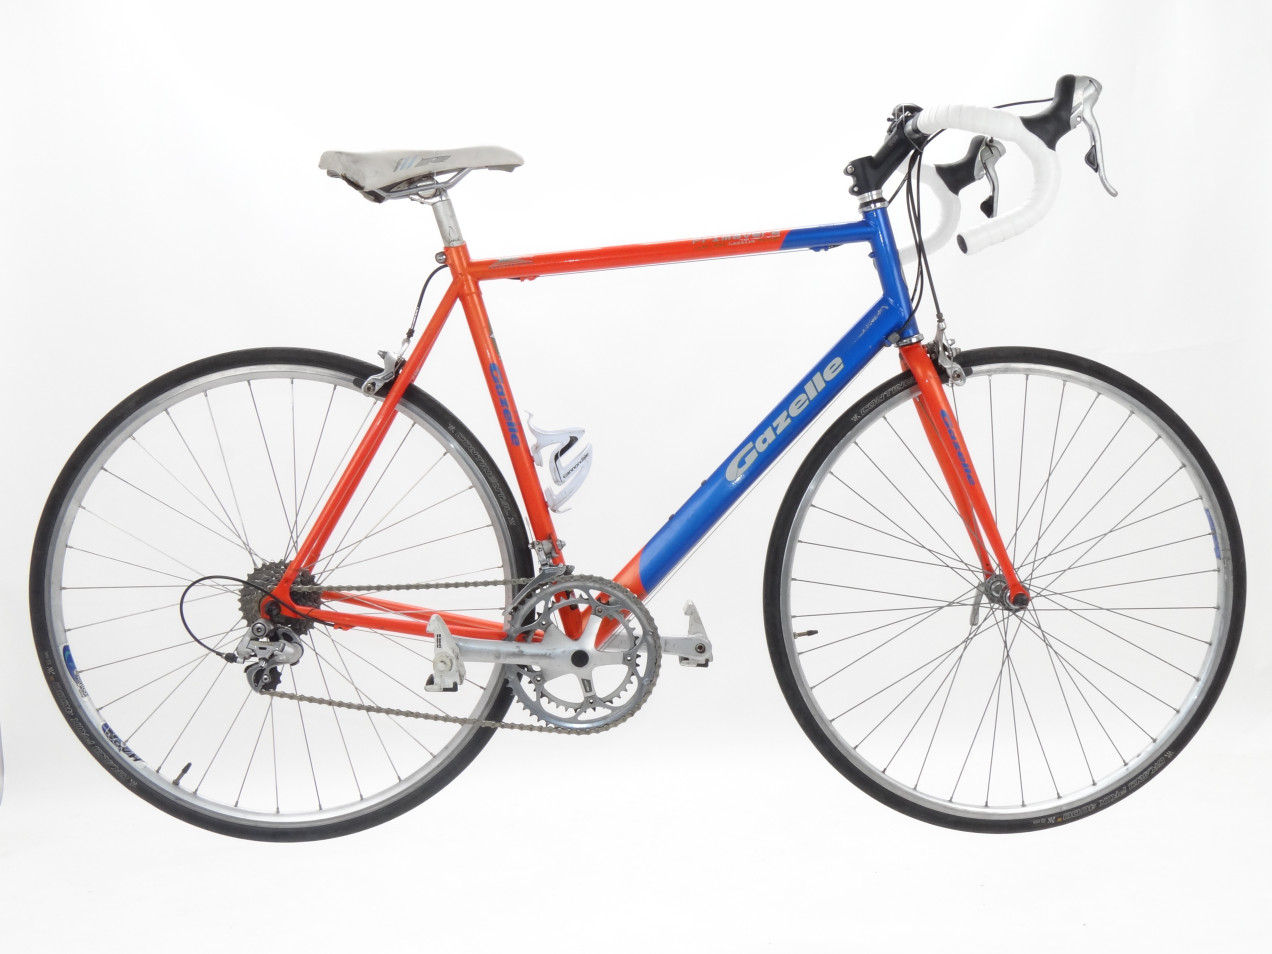 Doe herleven Mitt compleet Gazelle Primavera gebruikt in 57 cm | buycycle